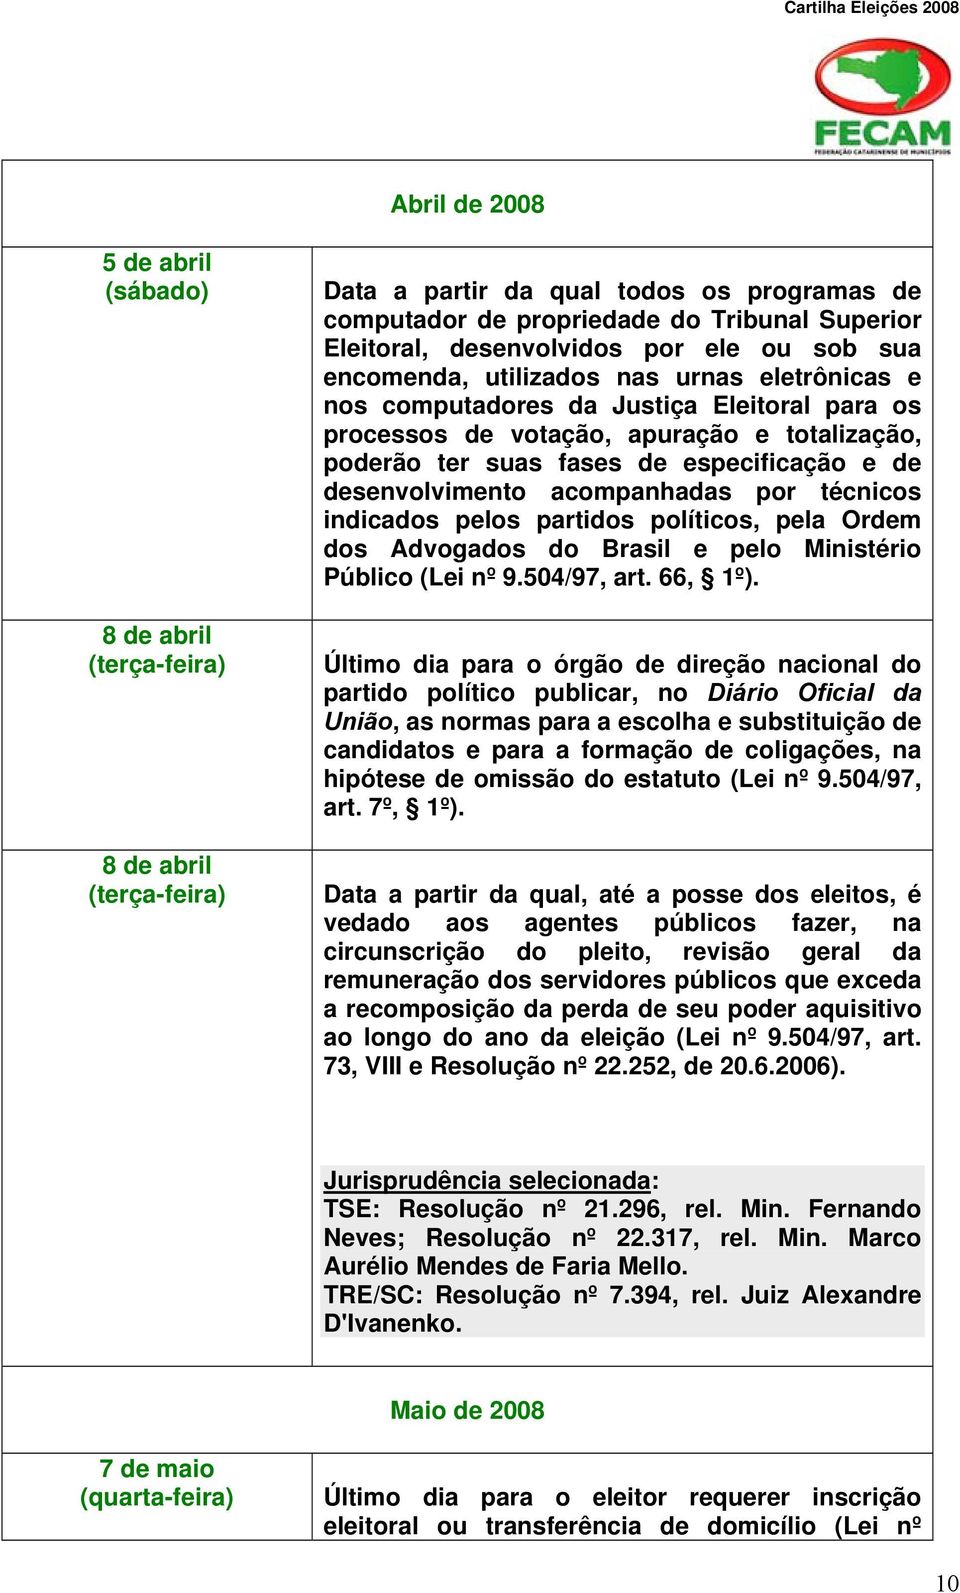 acompanhadas por técnicos indicados pelos partidos políticos, pela Ordem dos Advogados do Brasil e pelo Ministério Público (Lei nº 9.504/97, art. 66, 1º).